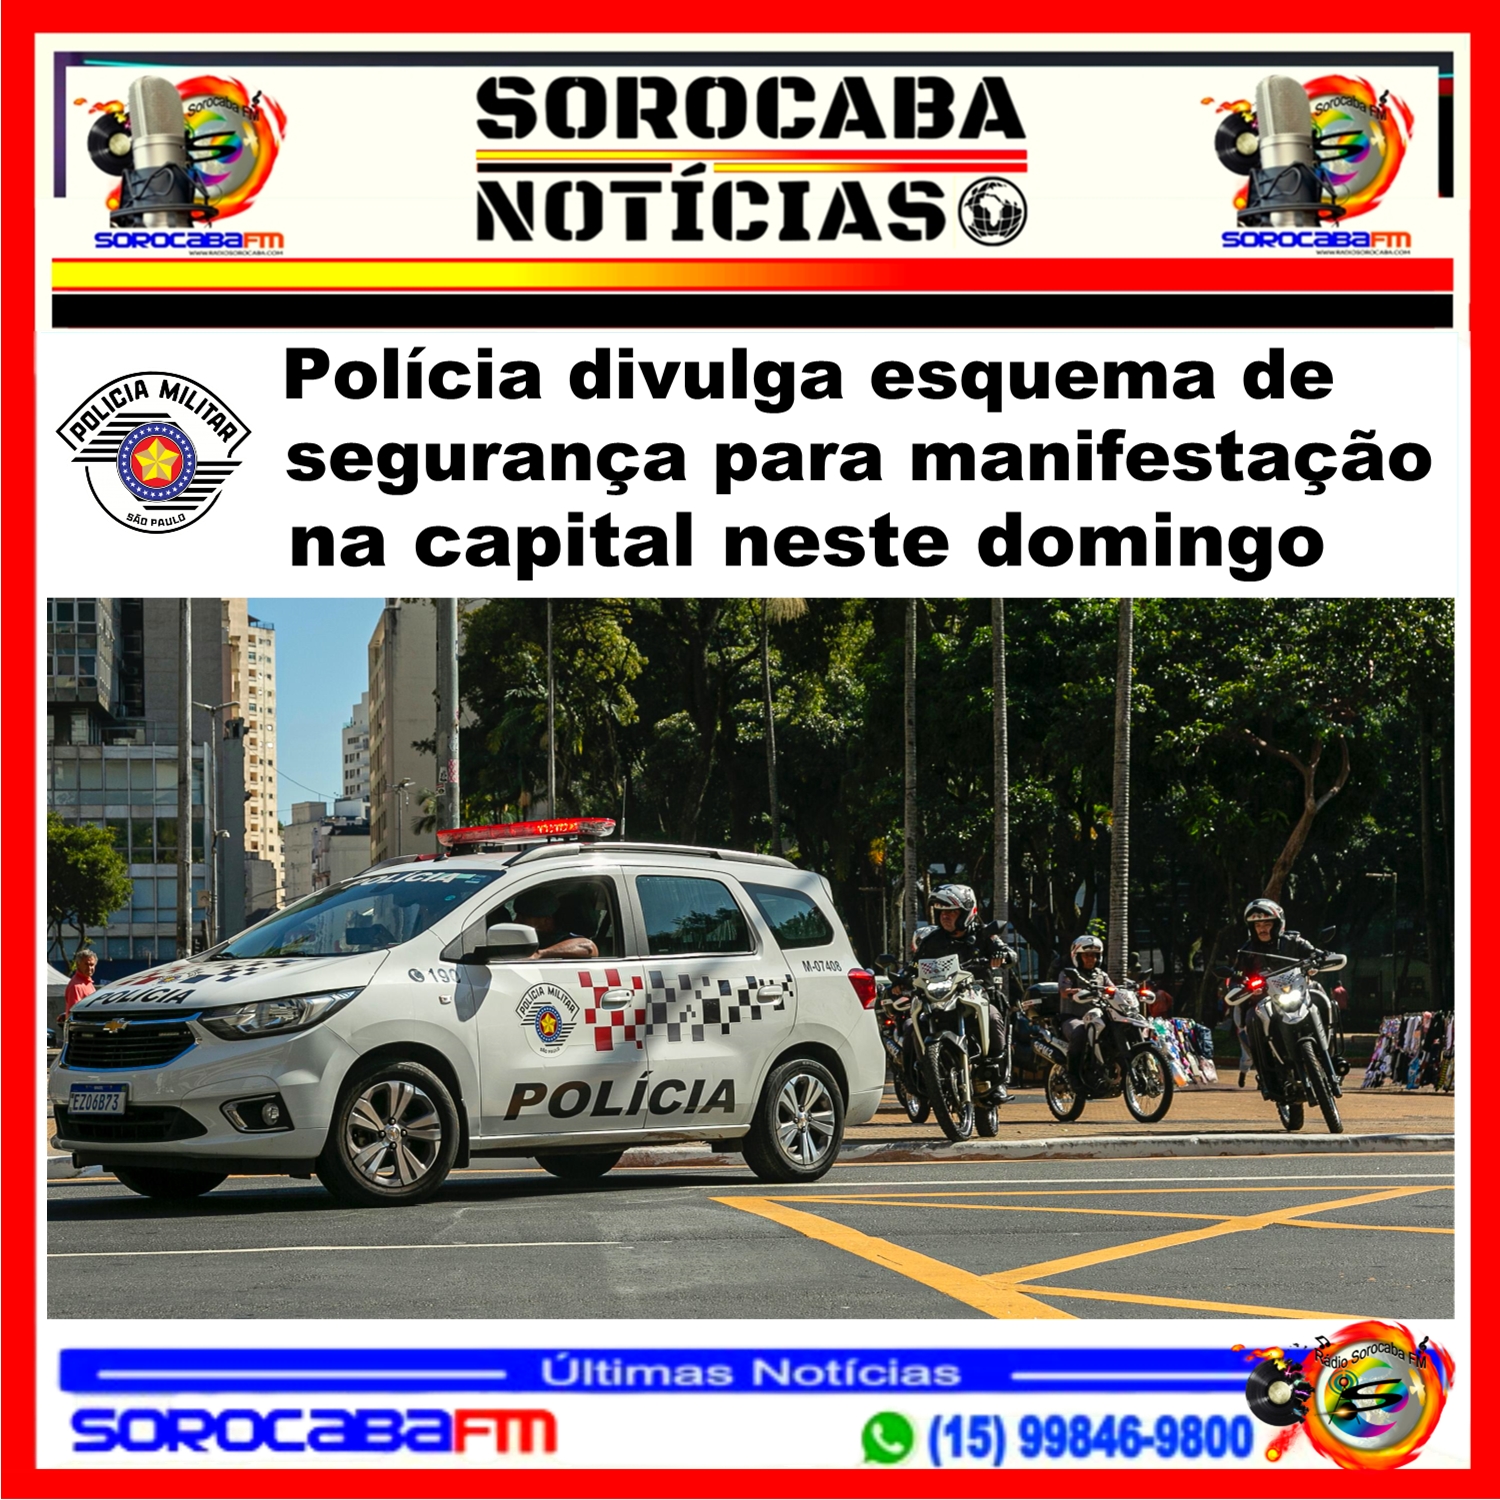 Polícia divulga esquema de segurança para manifestação na capital neste domingo